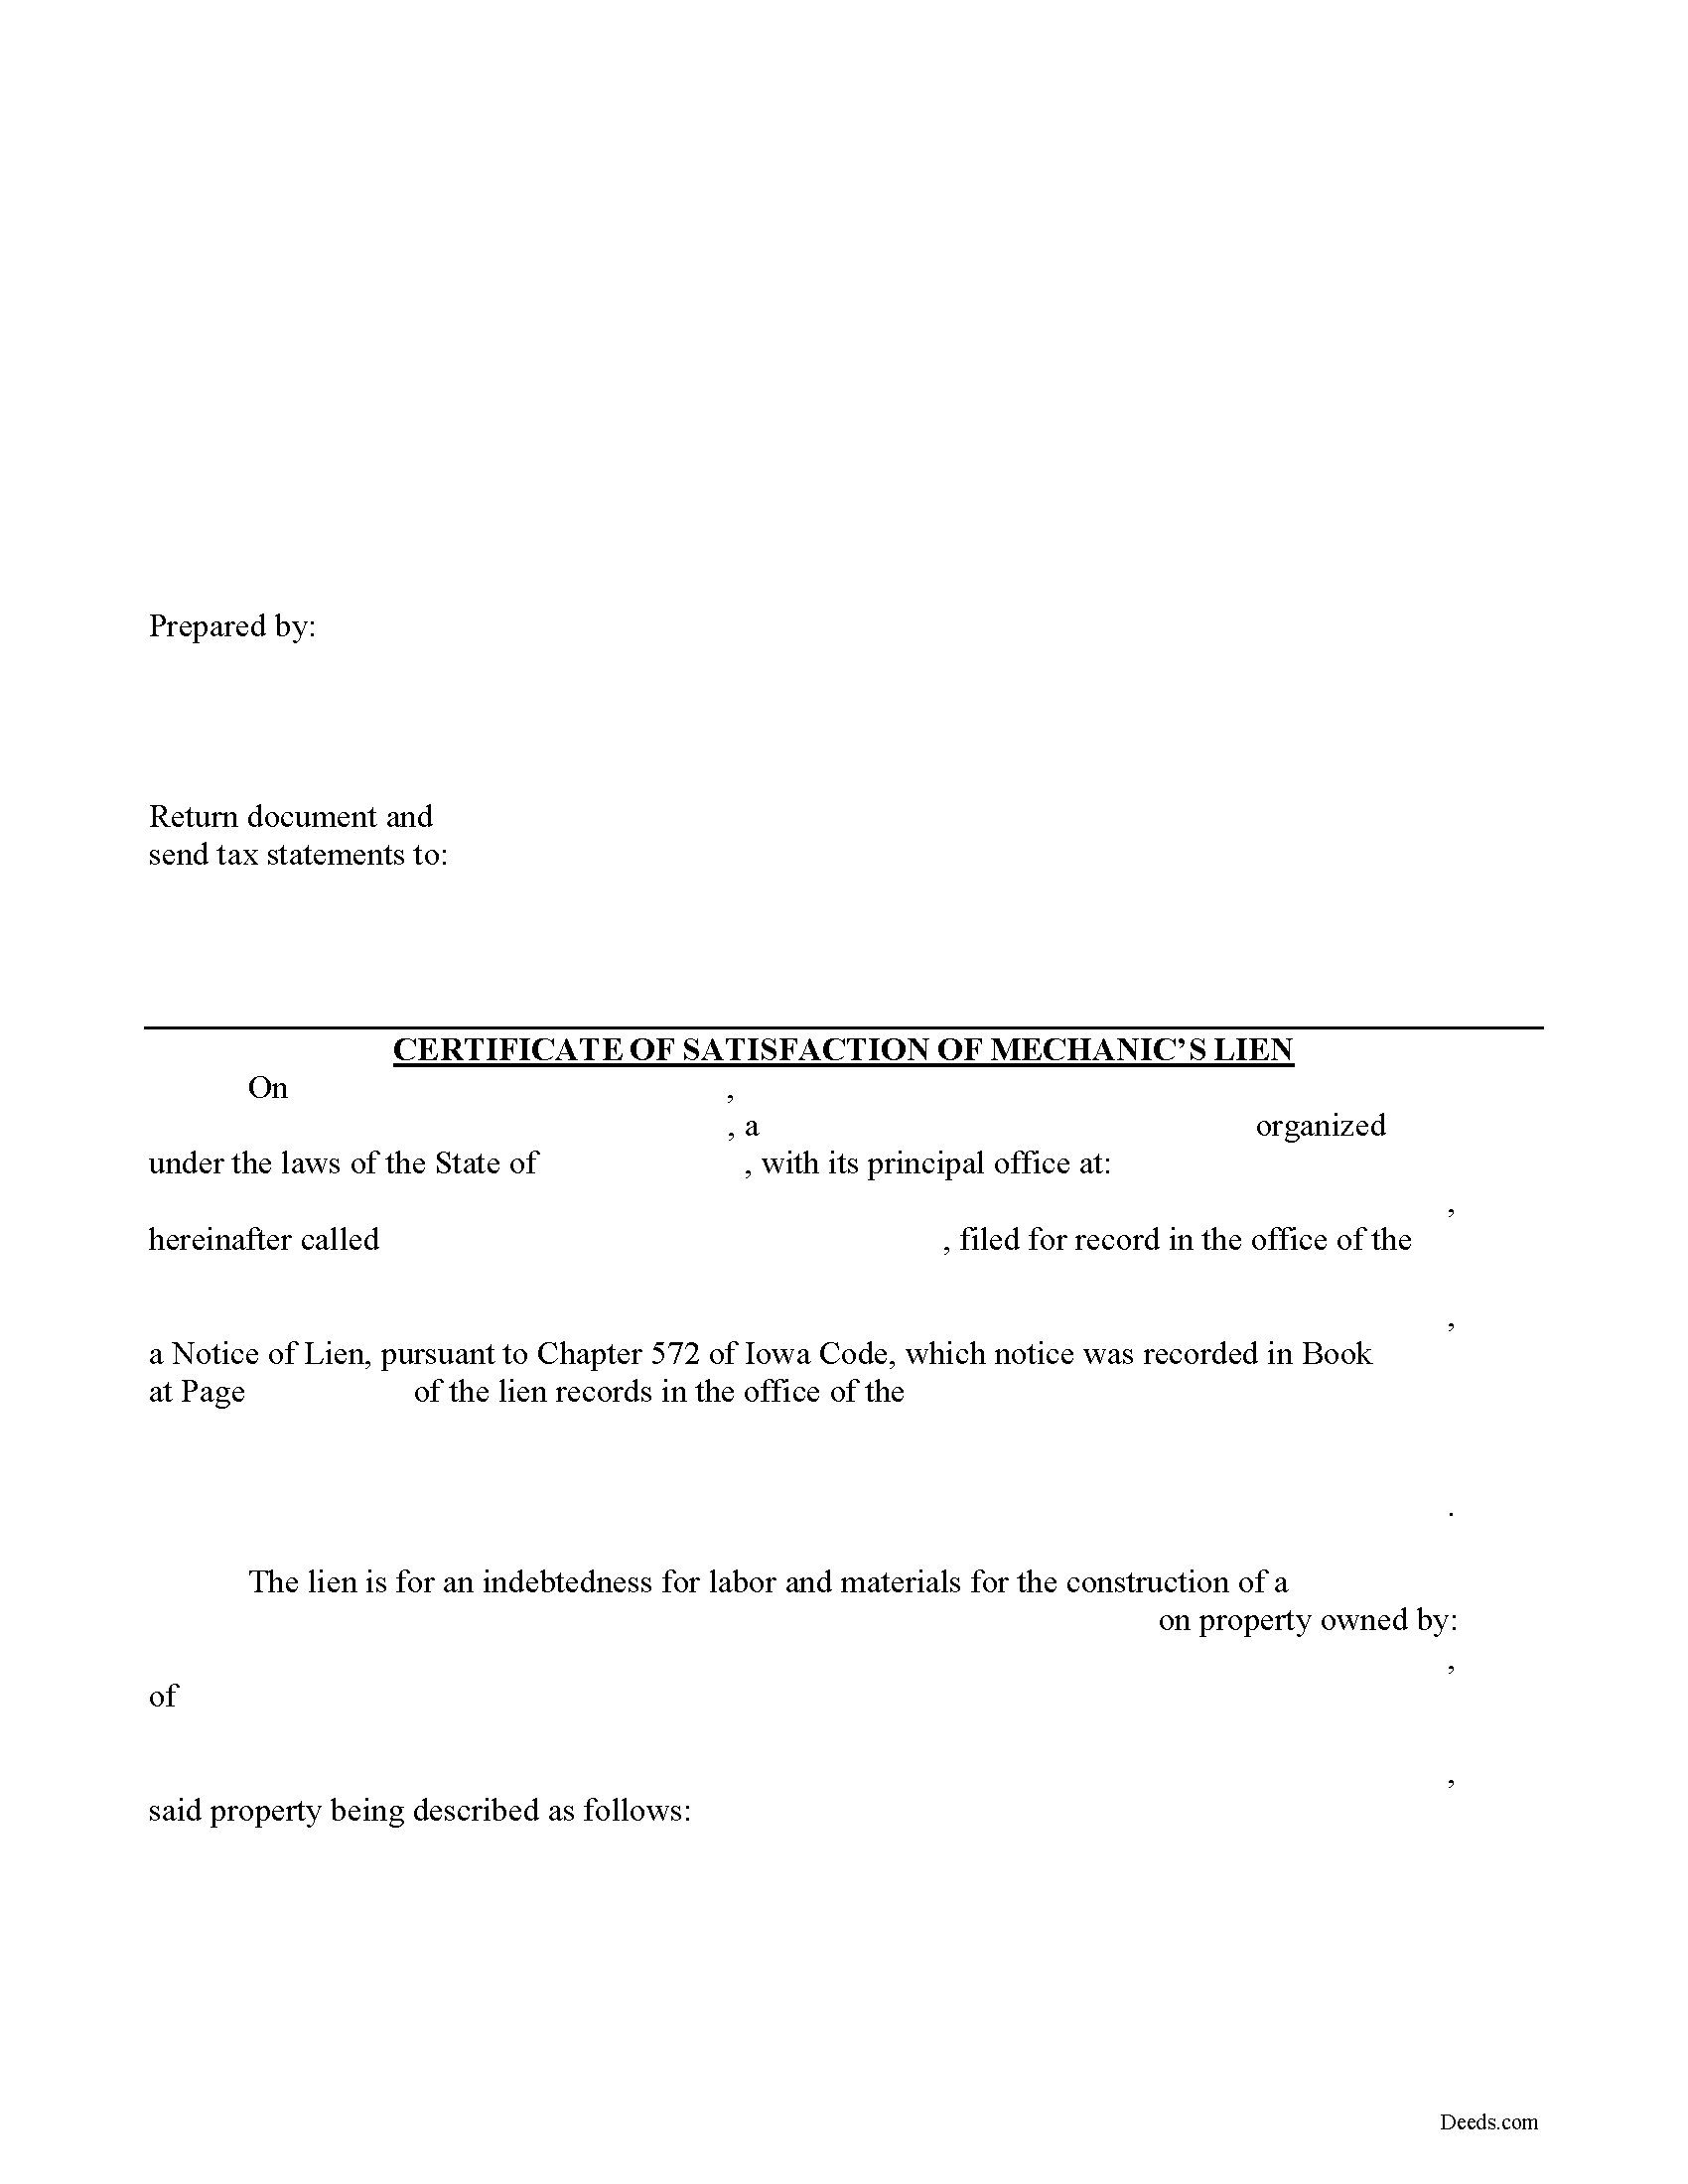 Certificate of Satisfaction